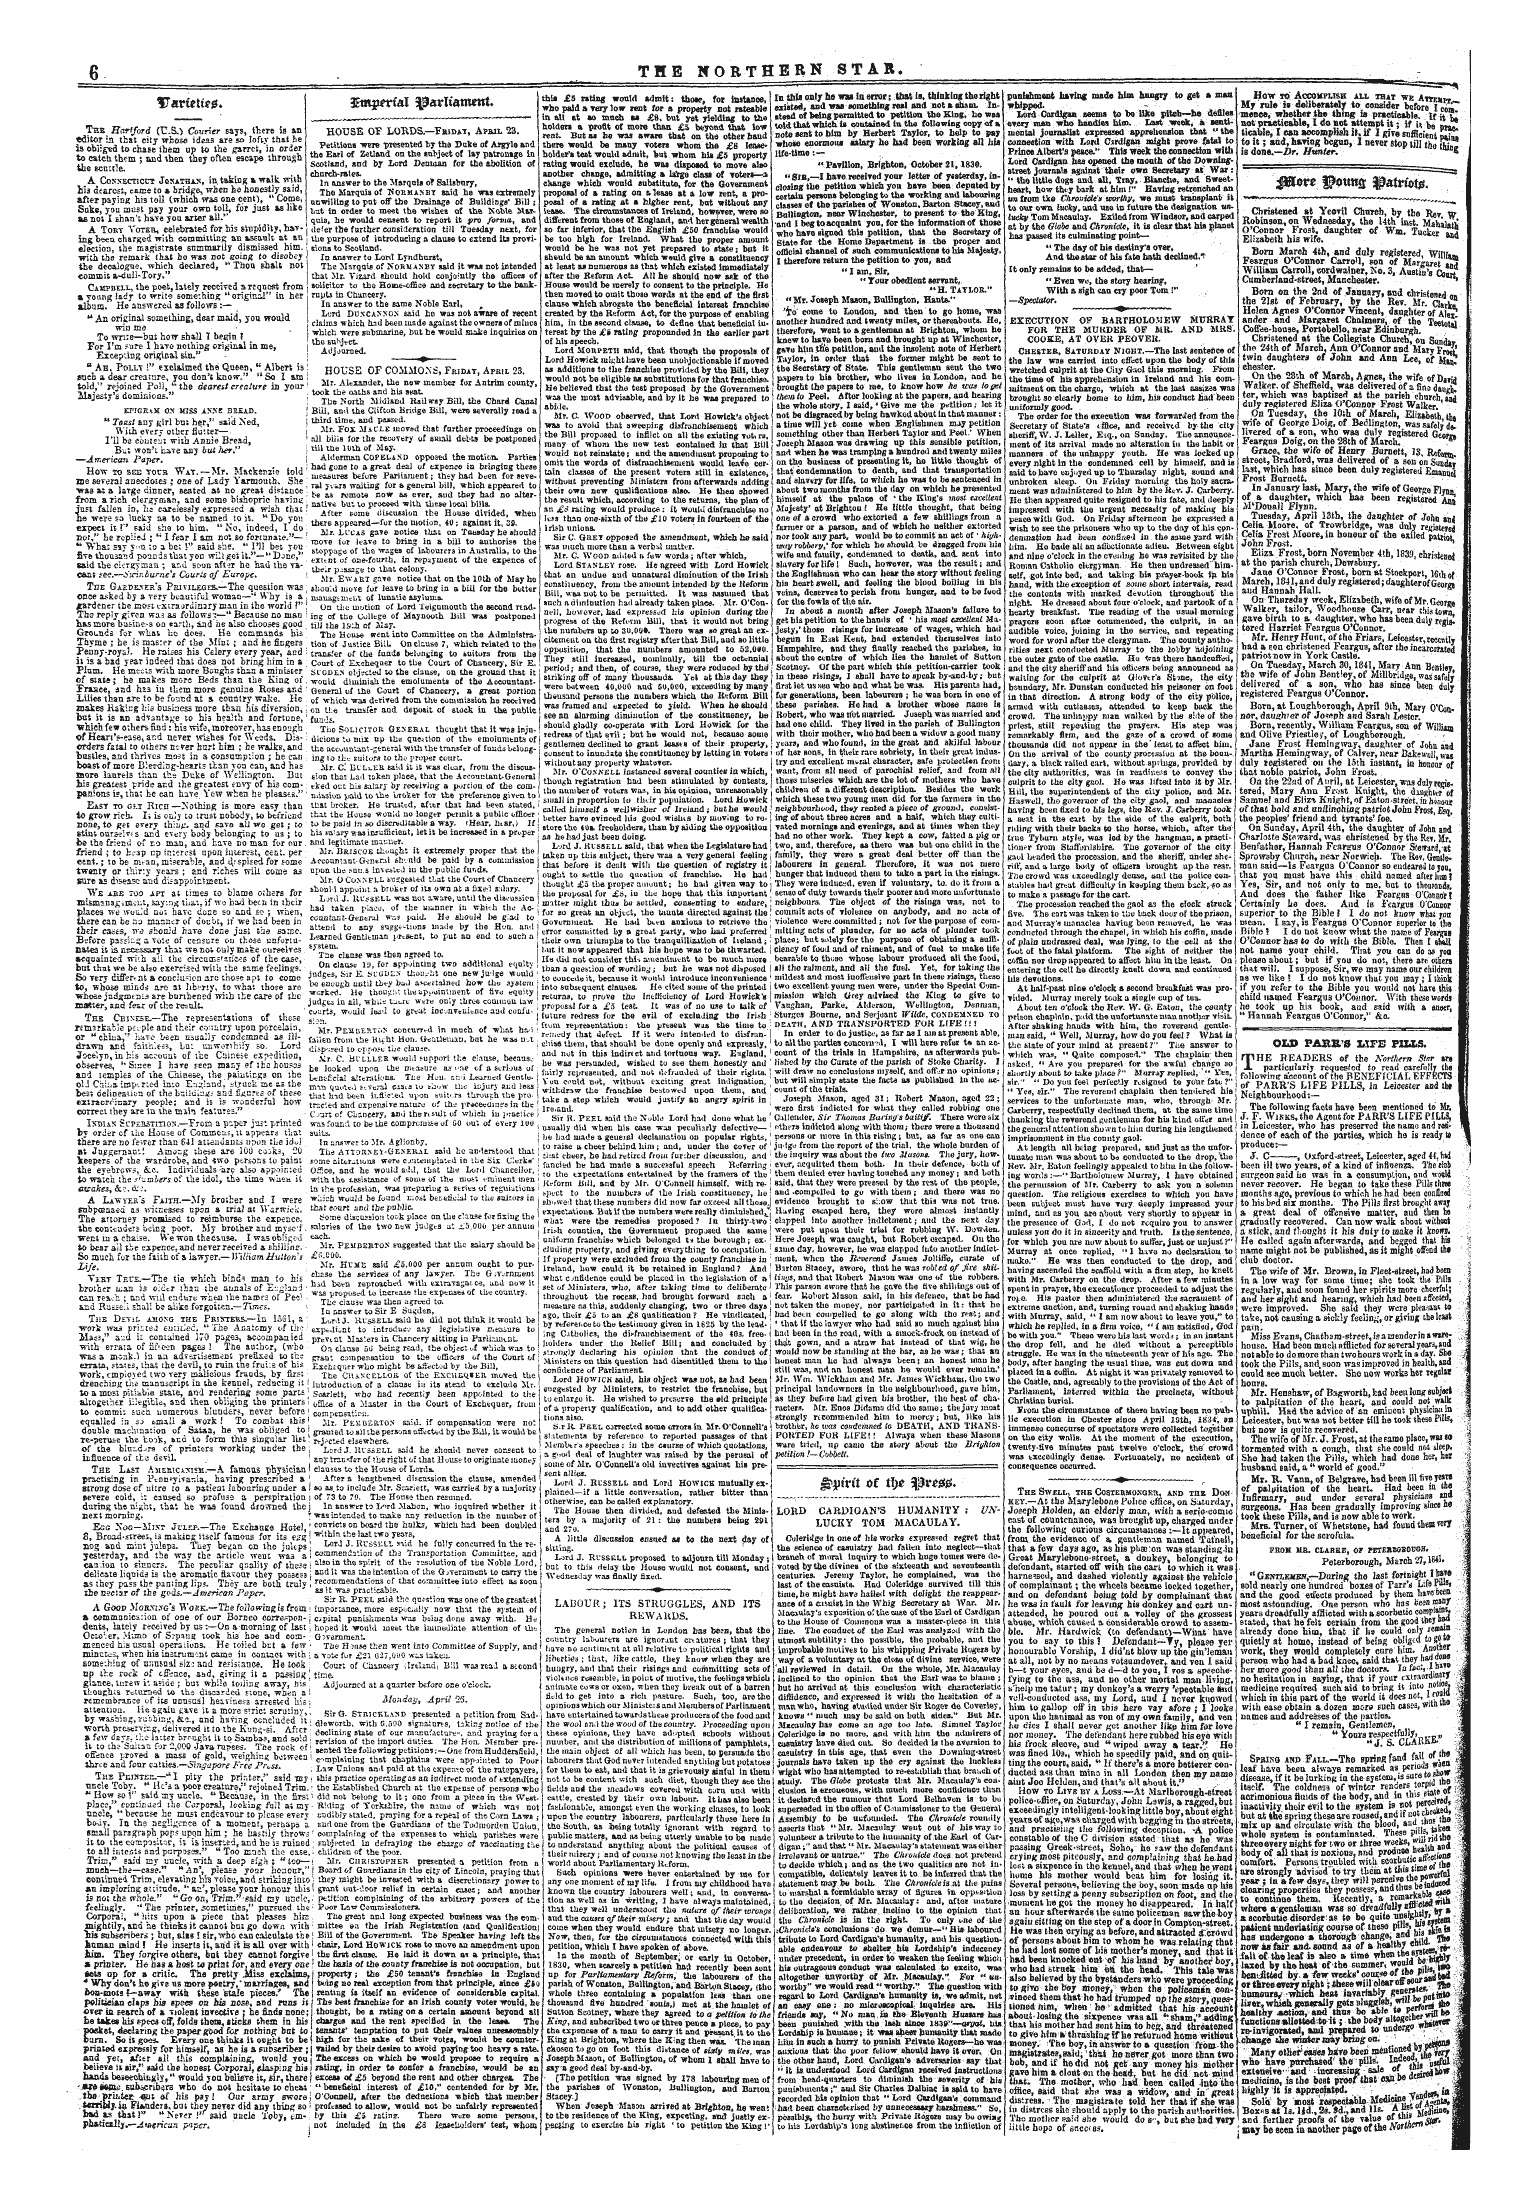 Northern Star (1837-1852): jS F Y, 3rd edition - V&Titxieg